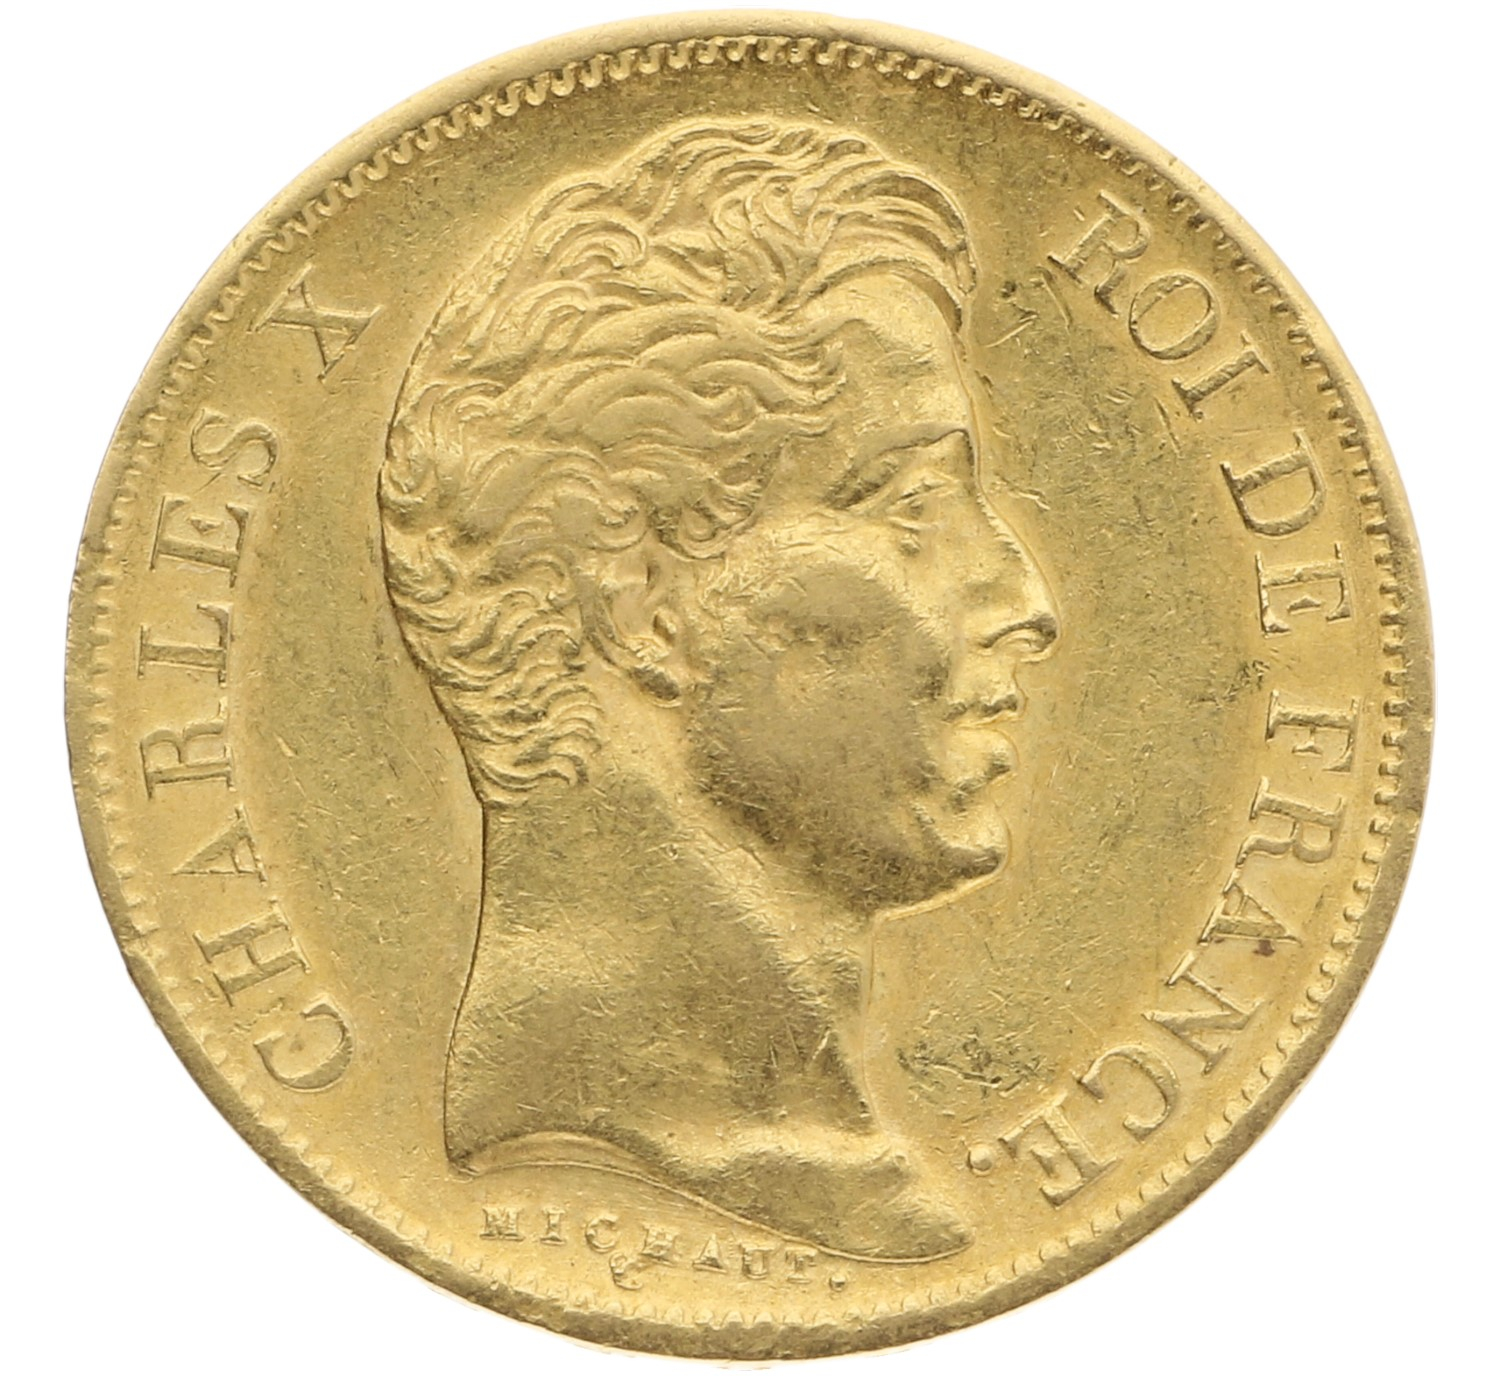 40 Francs - France - 1830 A